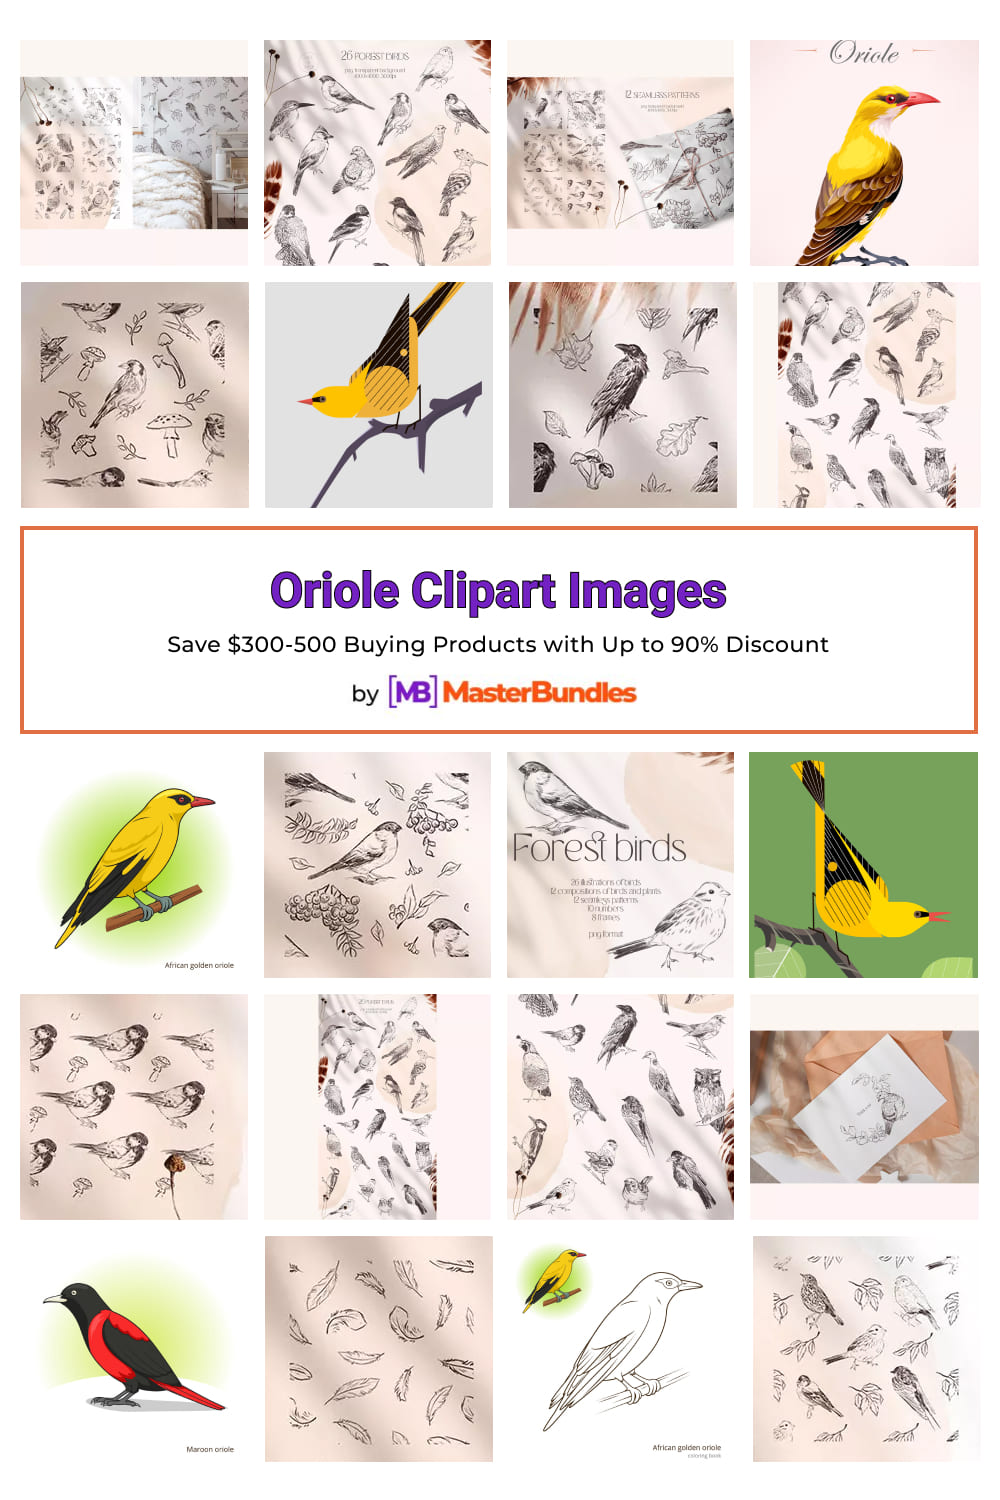 Oriole Clipart Images Pinterest.